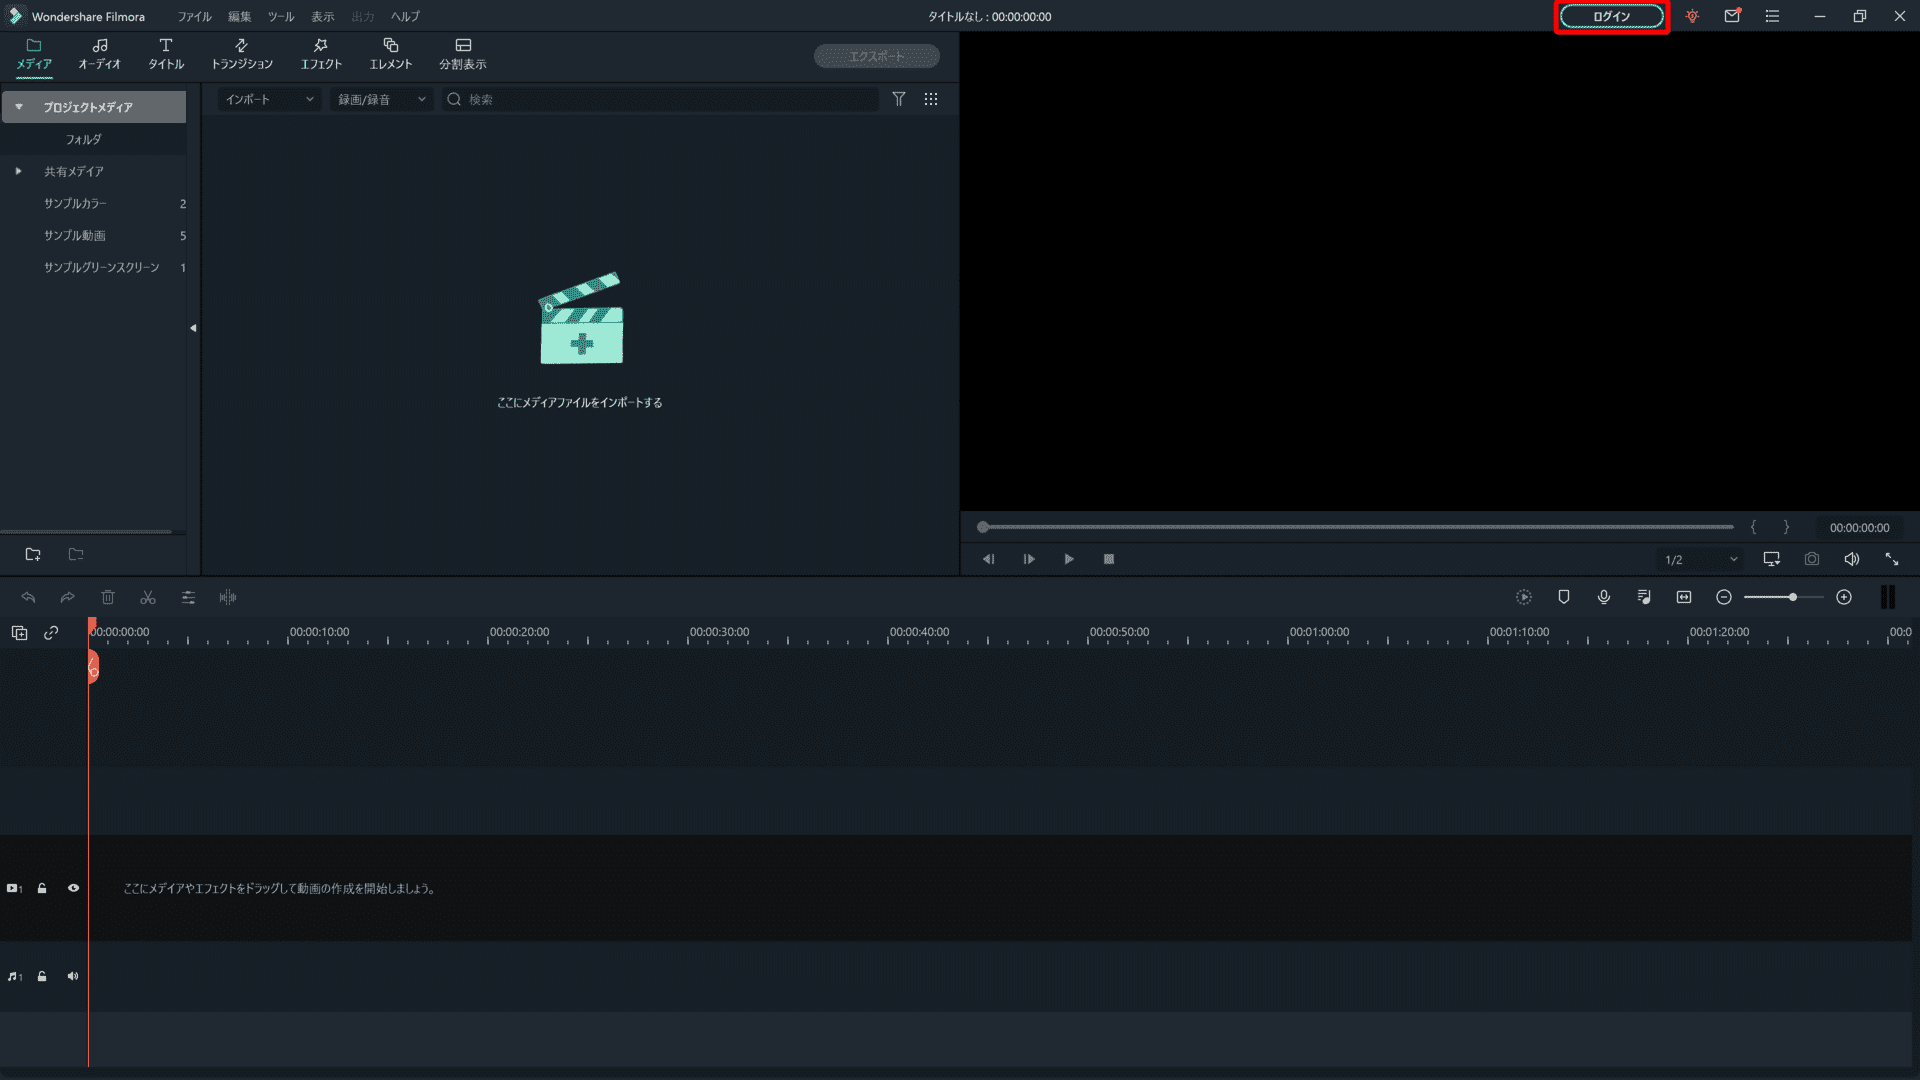 Filmora Xとは？｜動画編集ソフトFilmora Xの概要や基本的な使い方について解説｜基本的な使い方について：「Filmora X」の操作画面が表示されたら、操作画面右上の「ログイン」をクリックします。